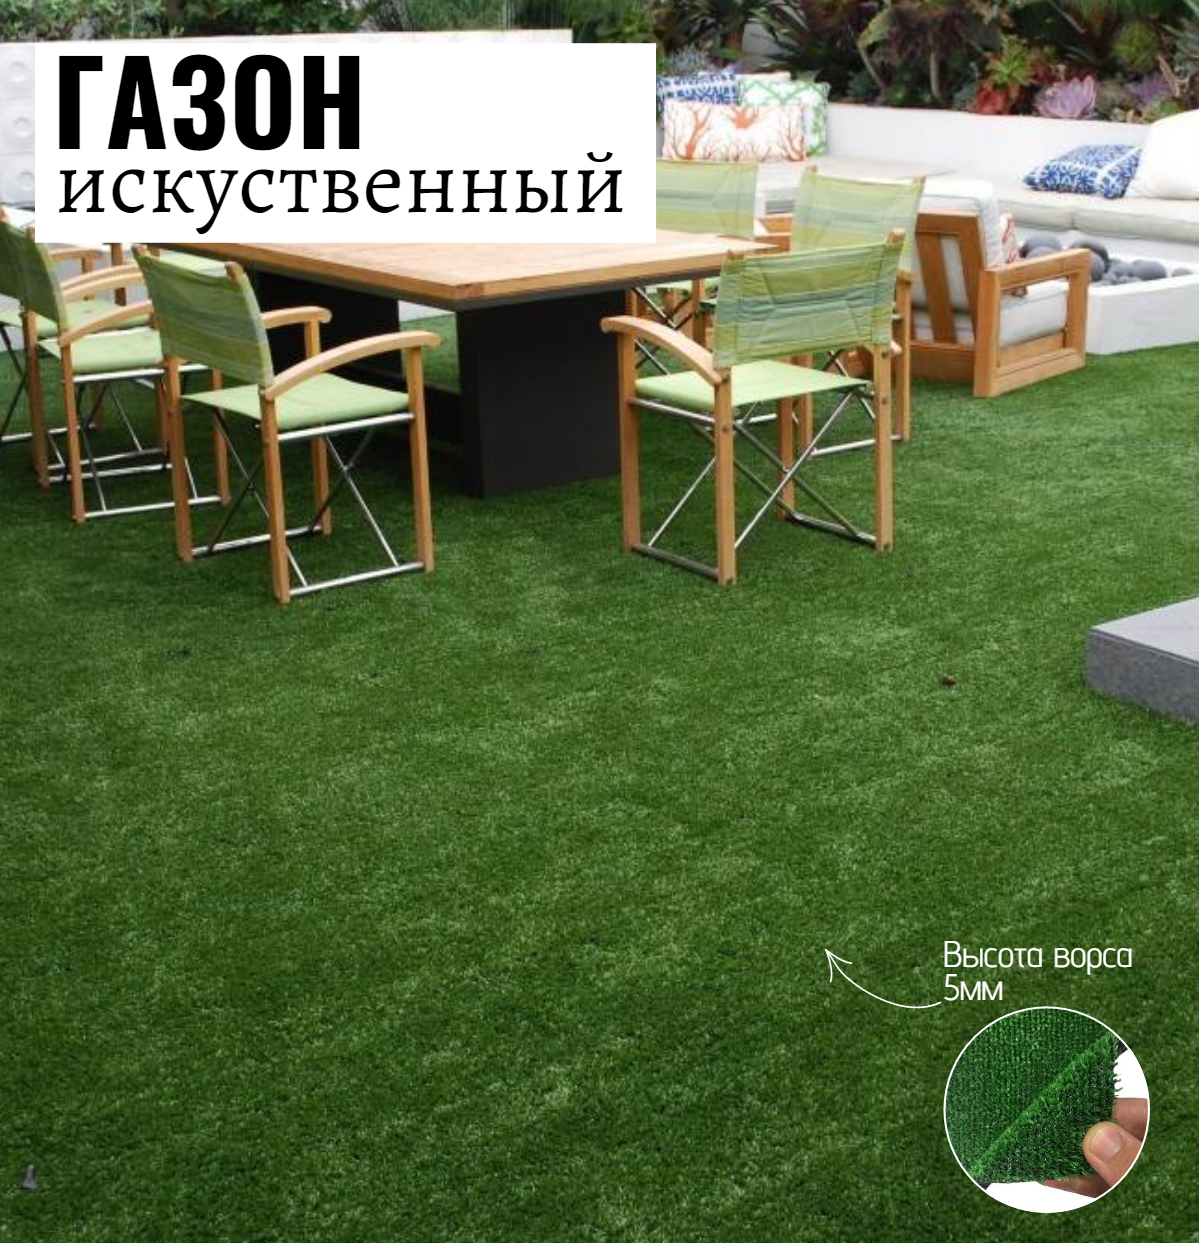 Искусственный газон Салон Ковров газон gzn-2-008 1 шт. 2х0.8м